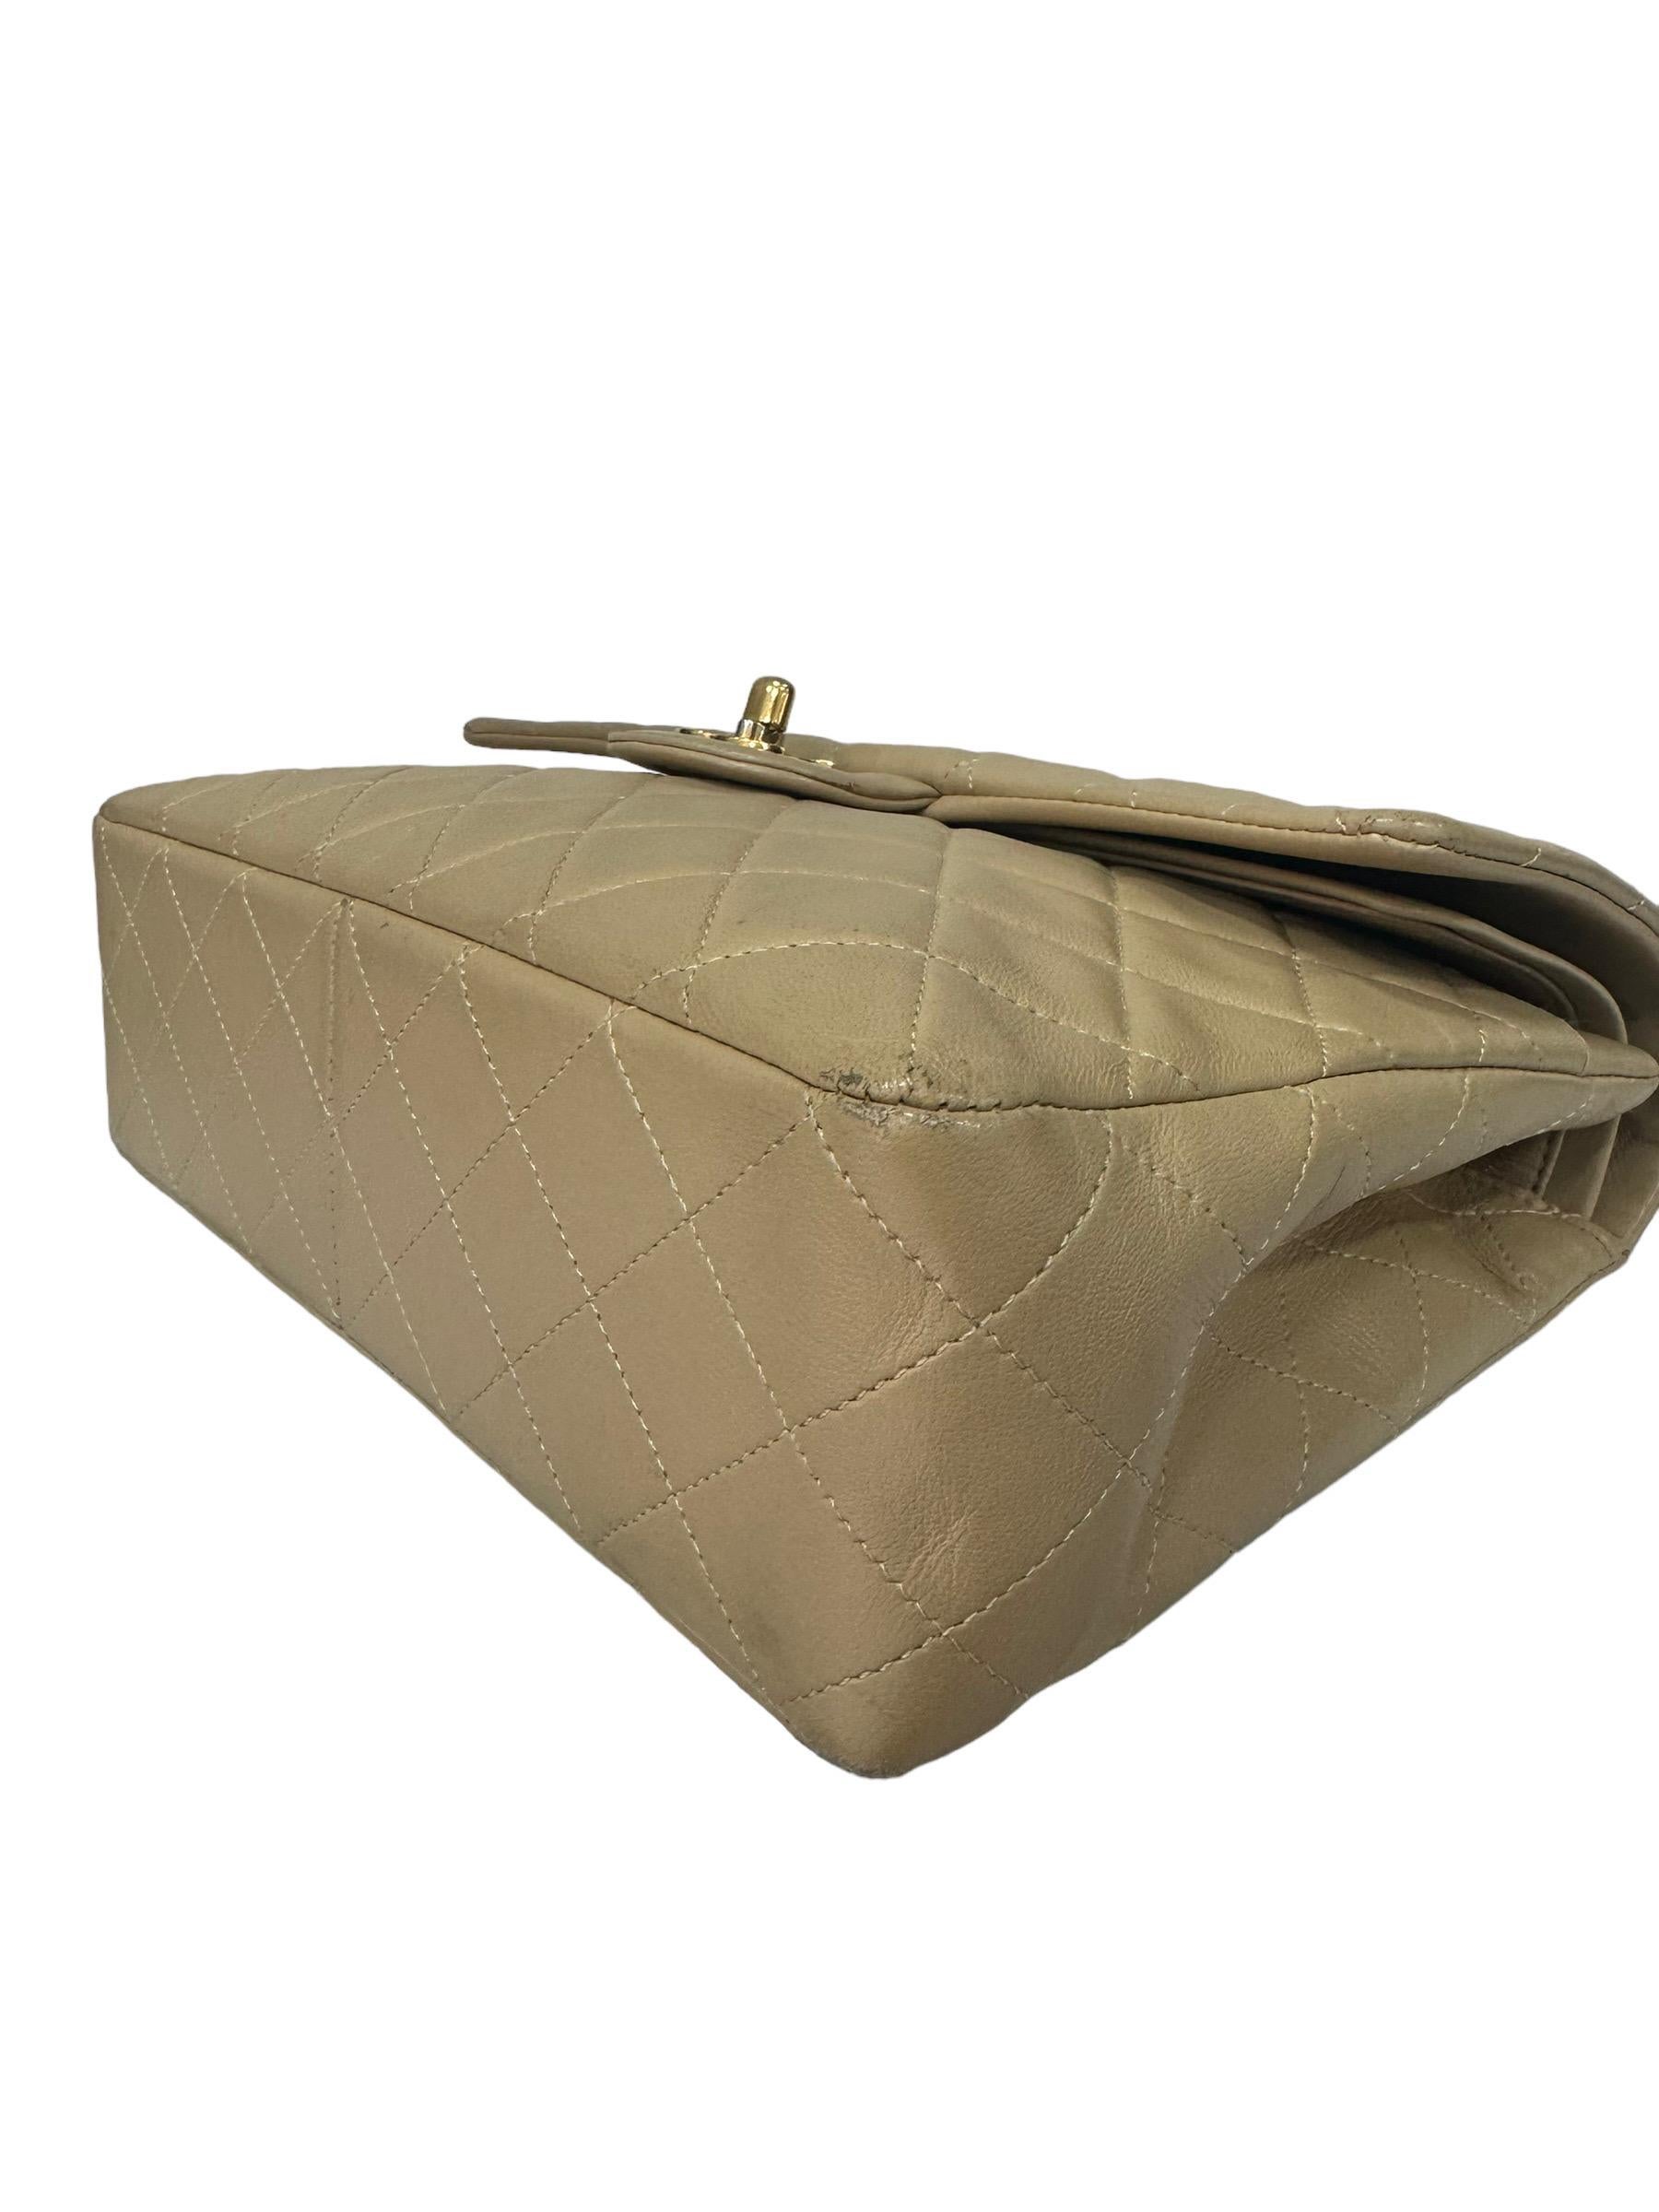 ‘90 Chanel Flap Vintage Beige Leather Shoulder Bag For Sale 6